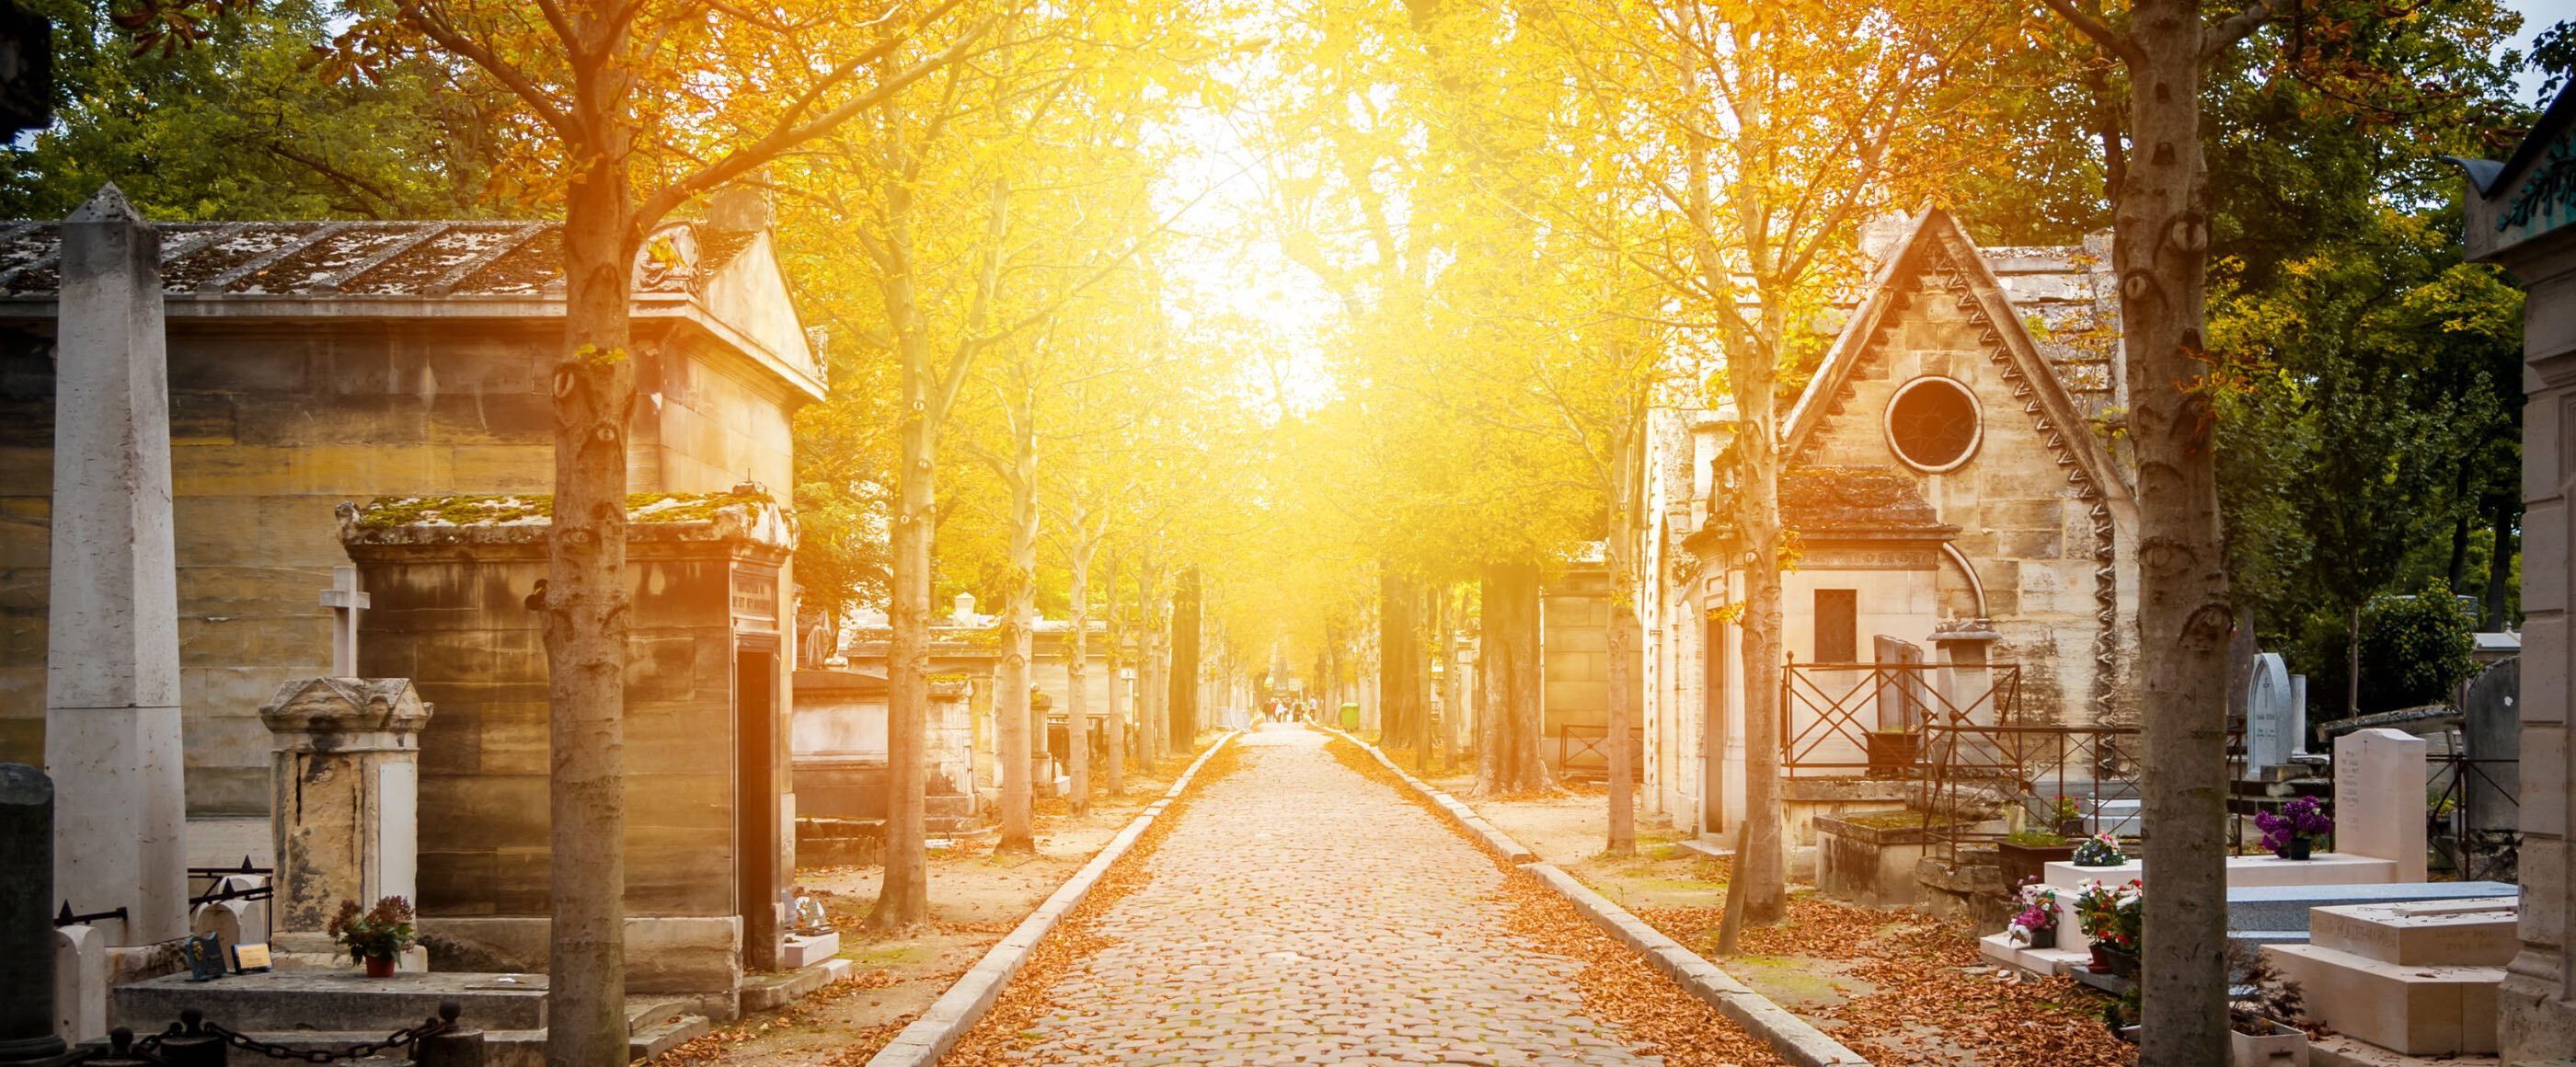 ein Friedhofsweg im Herbstlicht. Die Sonne scheint auf den Weg, rechts und links sind Gräber und Bäume